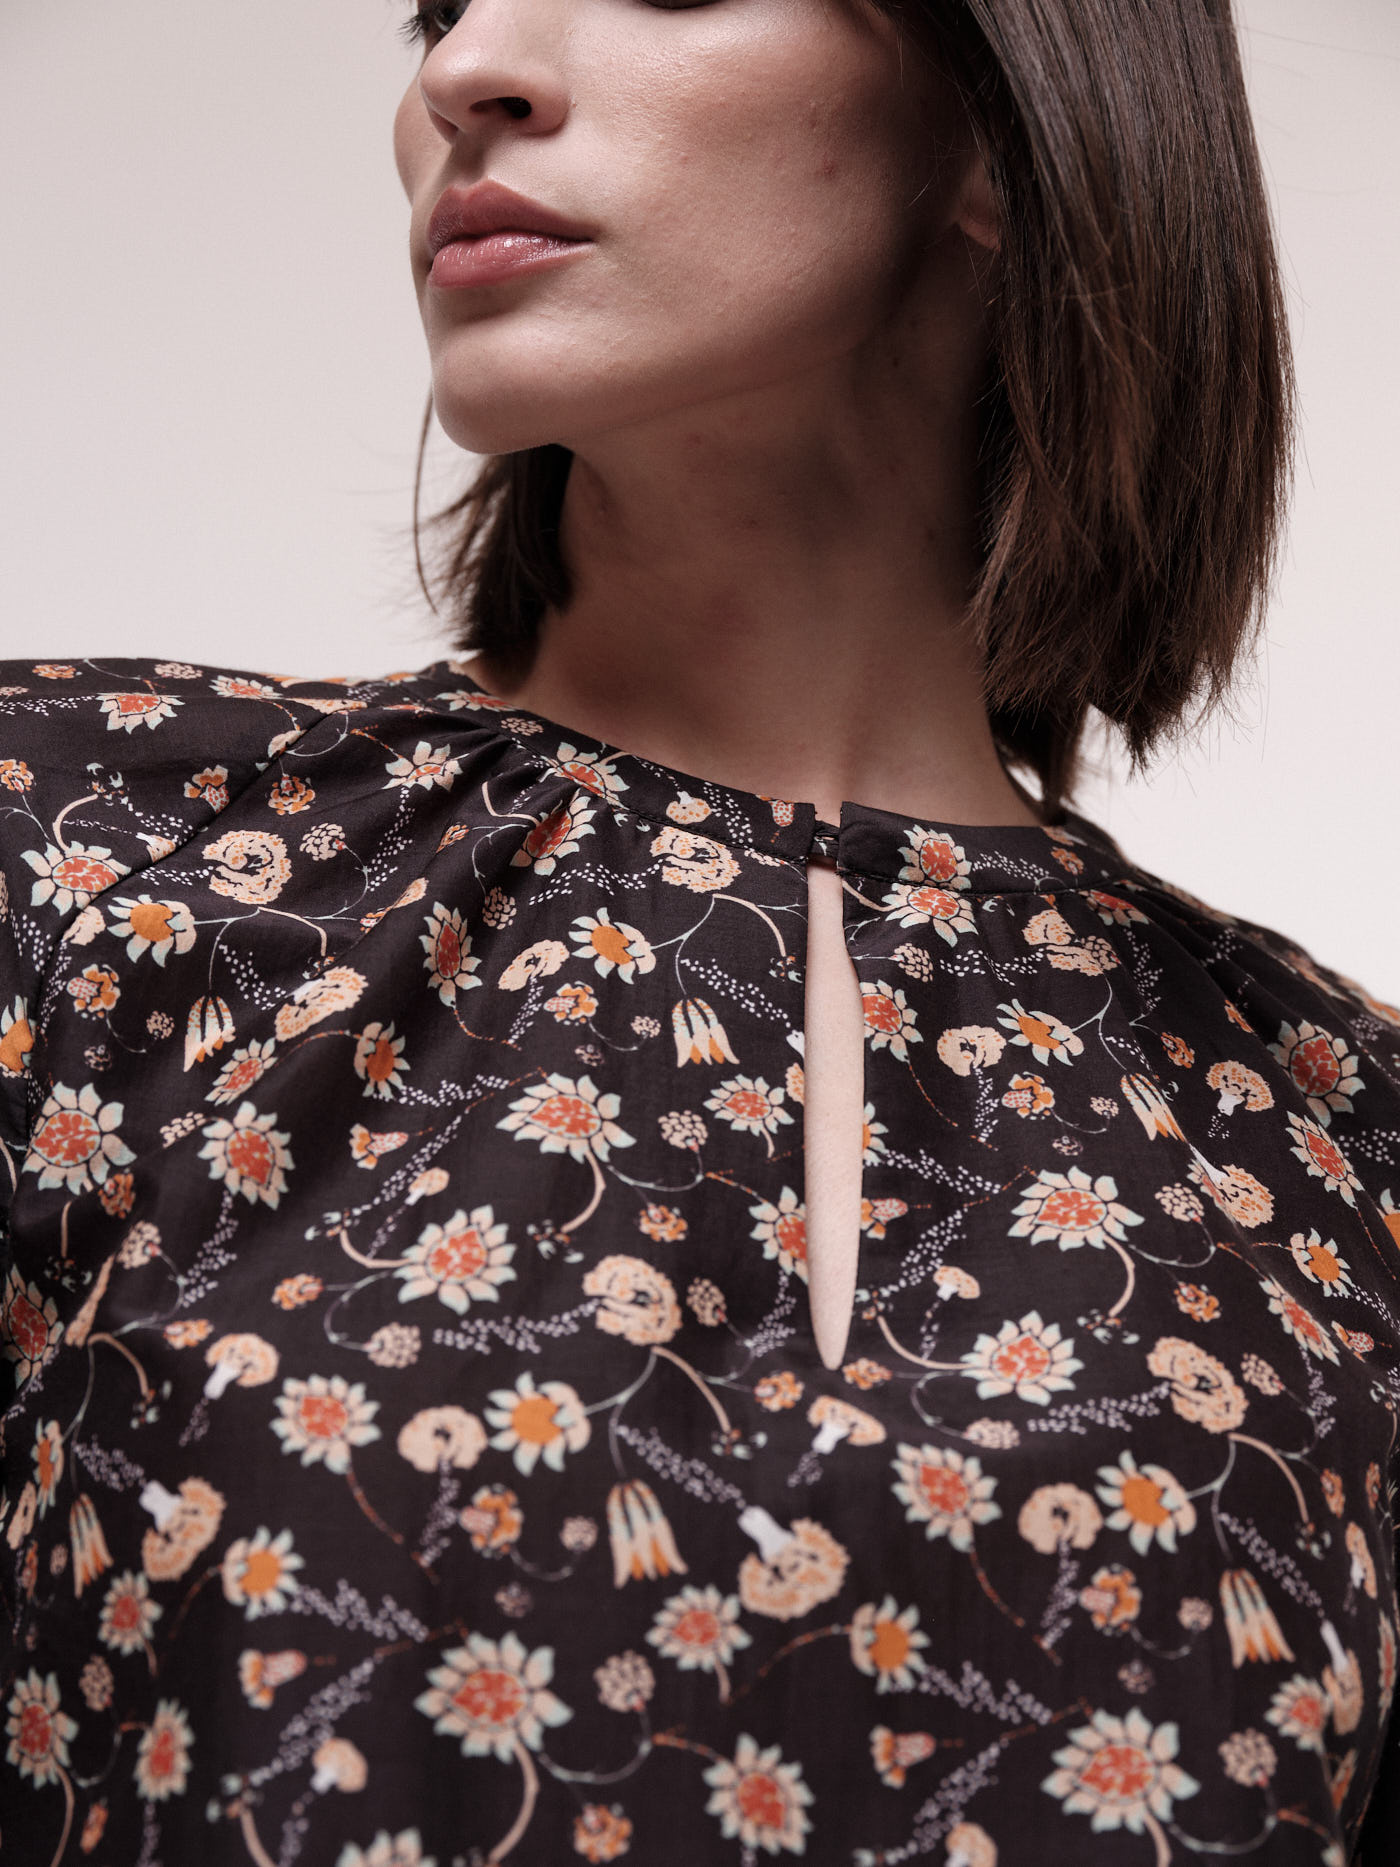 Gemusterte Bluse für Damen print botanic garden black mit Seide